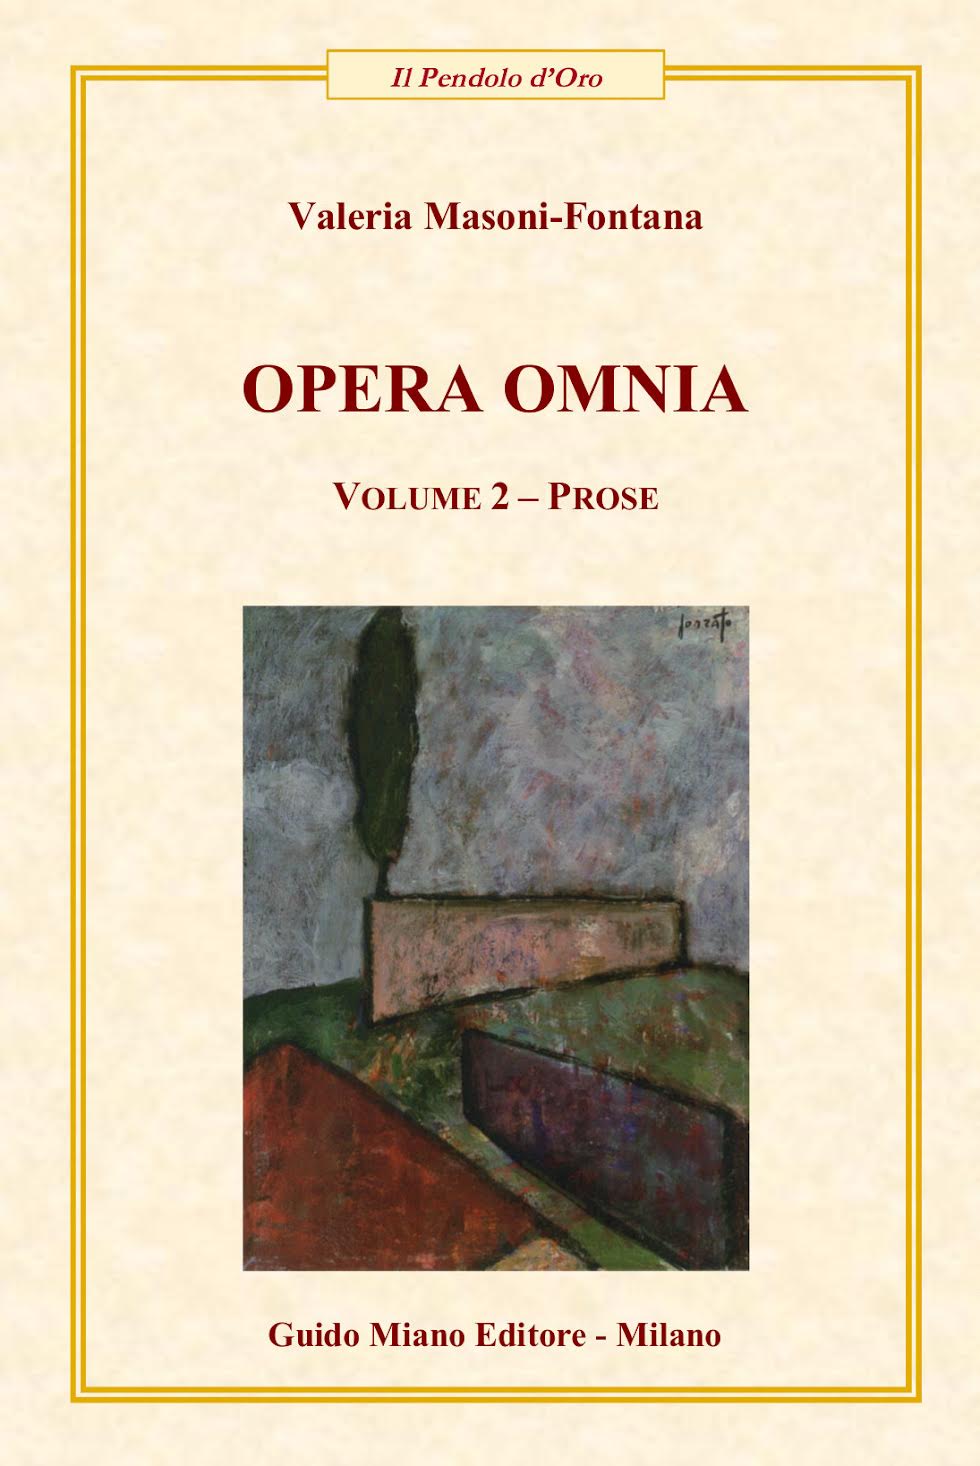 È uscito il libro di poesie: OPERA OMNIA Volume 2 - Prose di VALERIA MASONI-FONTANA